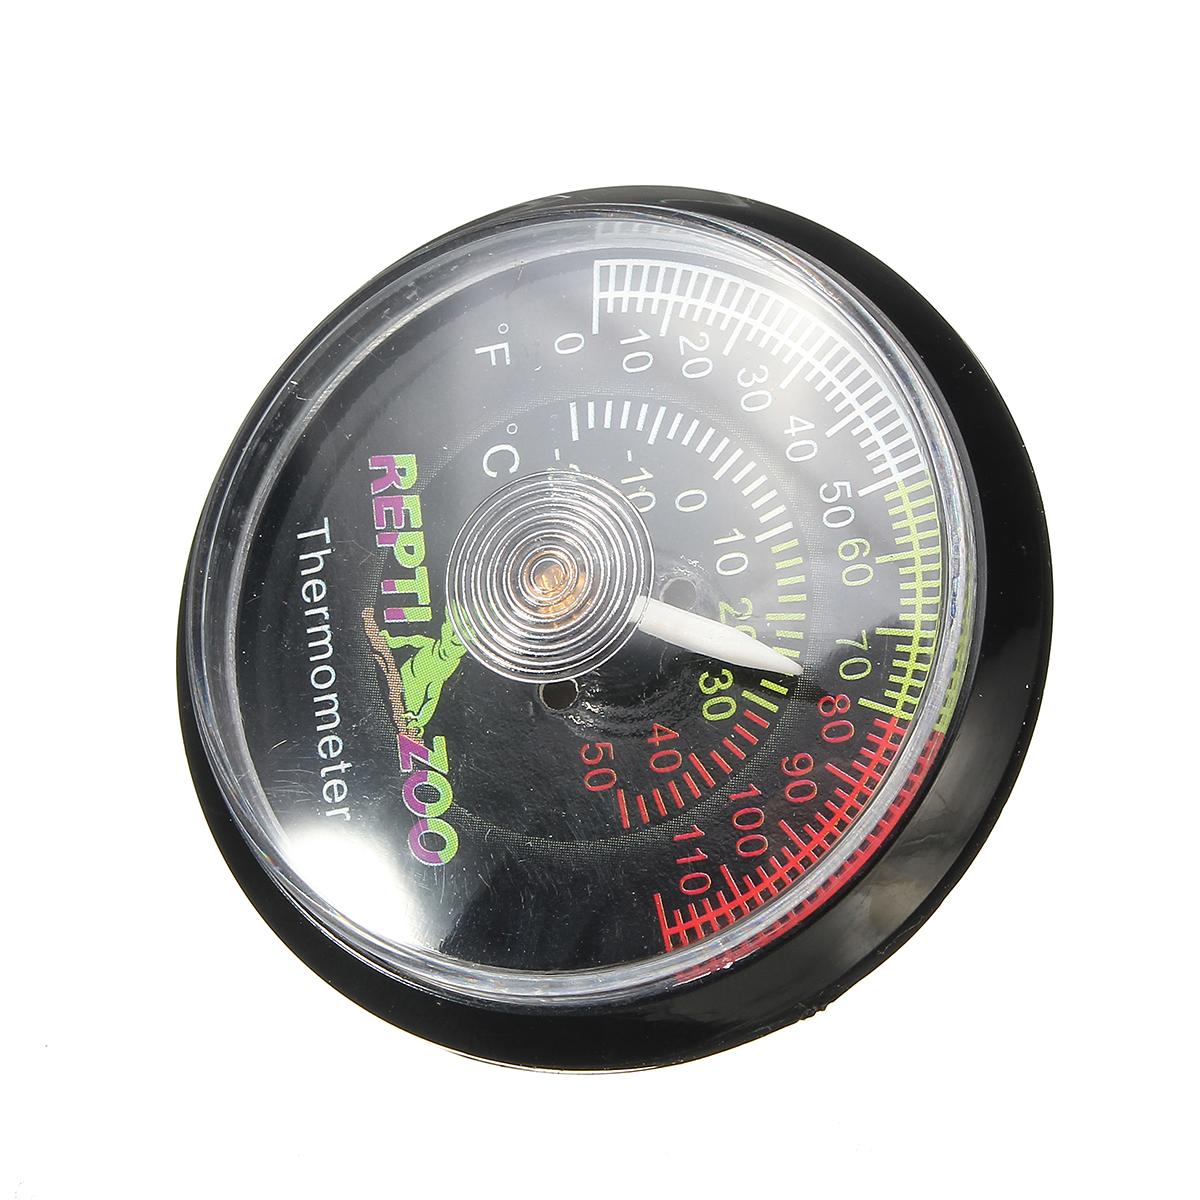 Reptile-Tortoise-Vivarium-Terrarium-Temperature-Meter-Thermometer-with-Colour-Codes-1263986-7